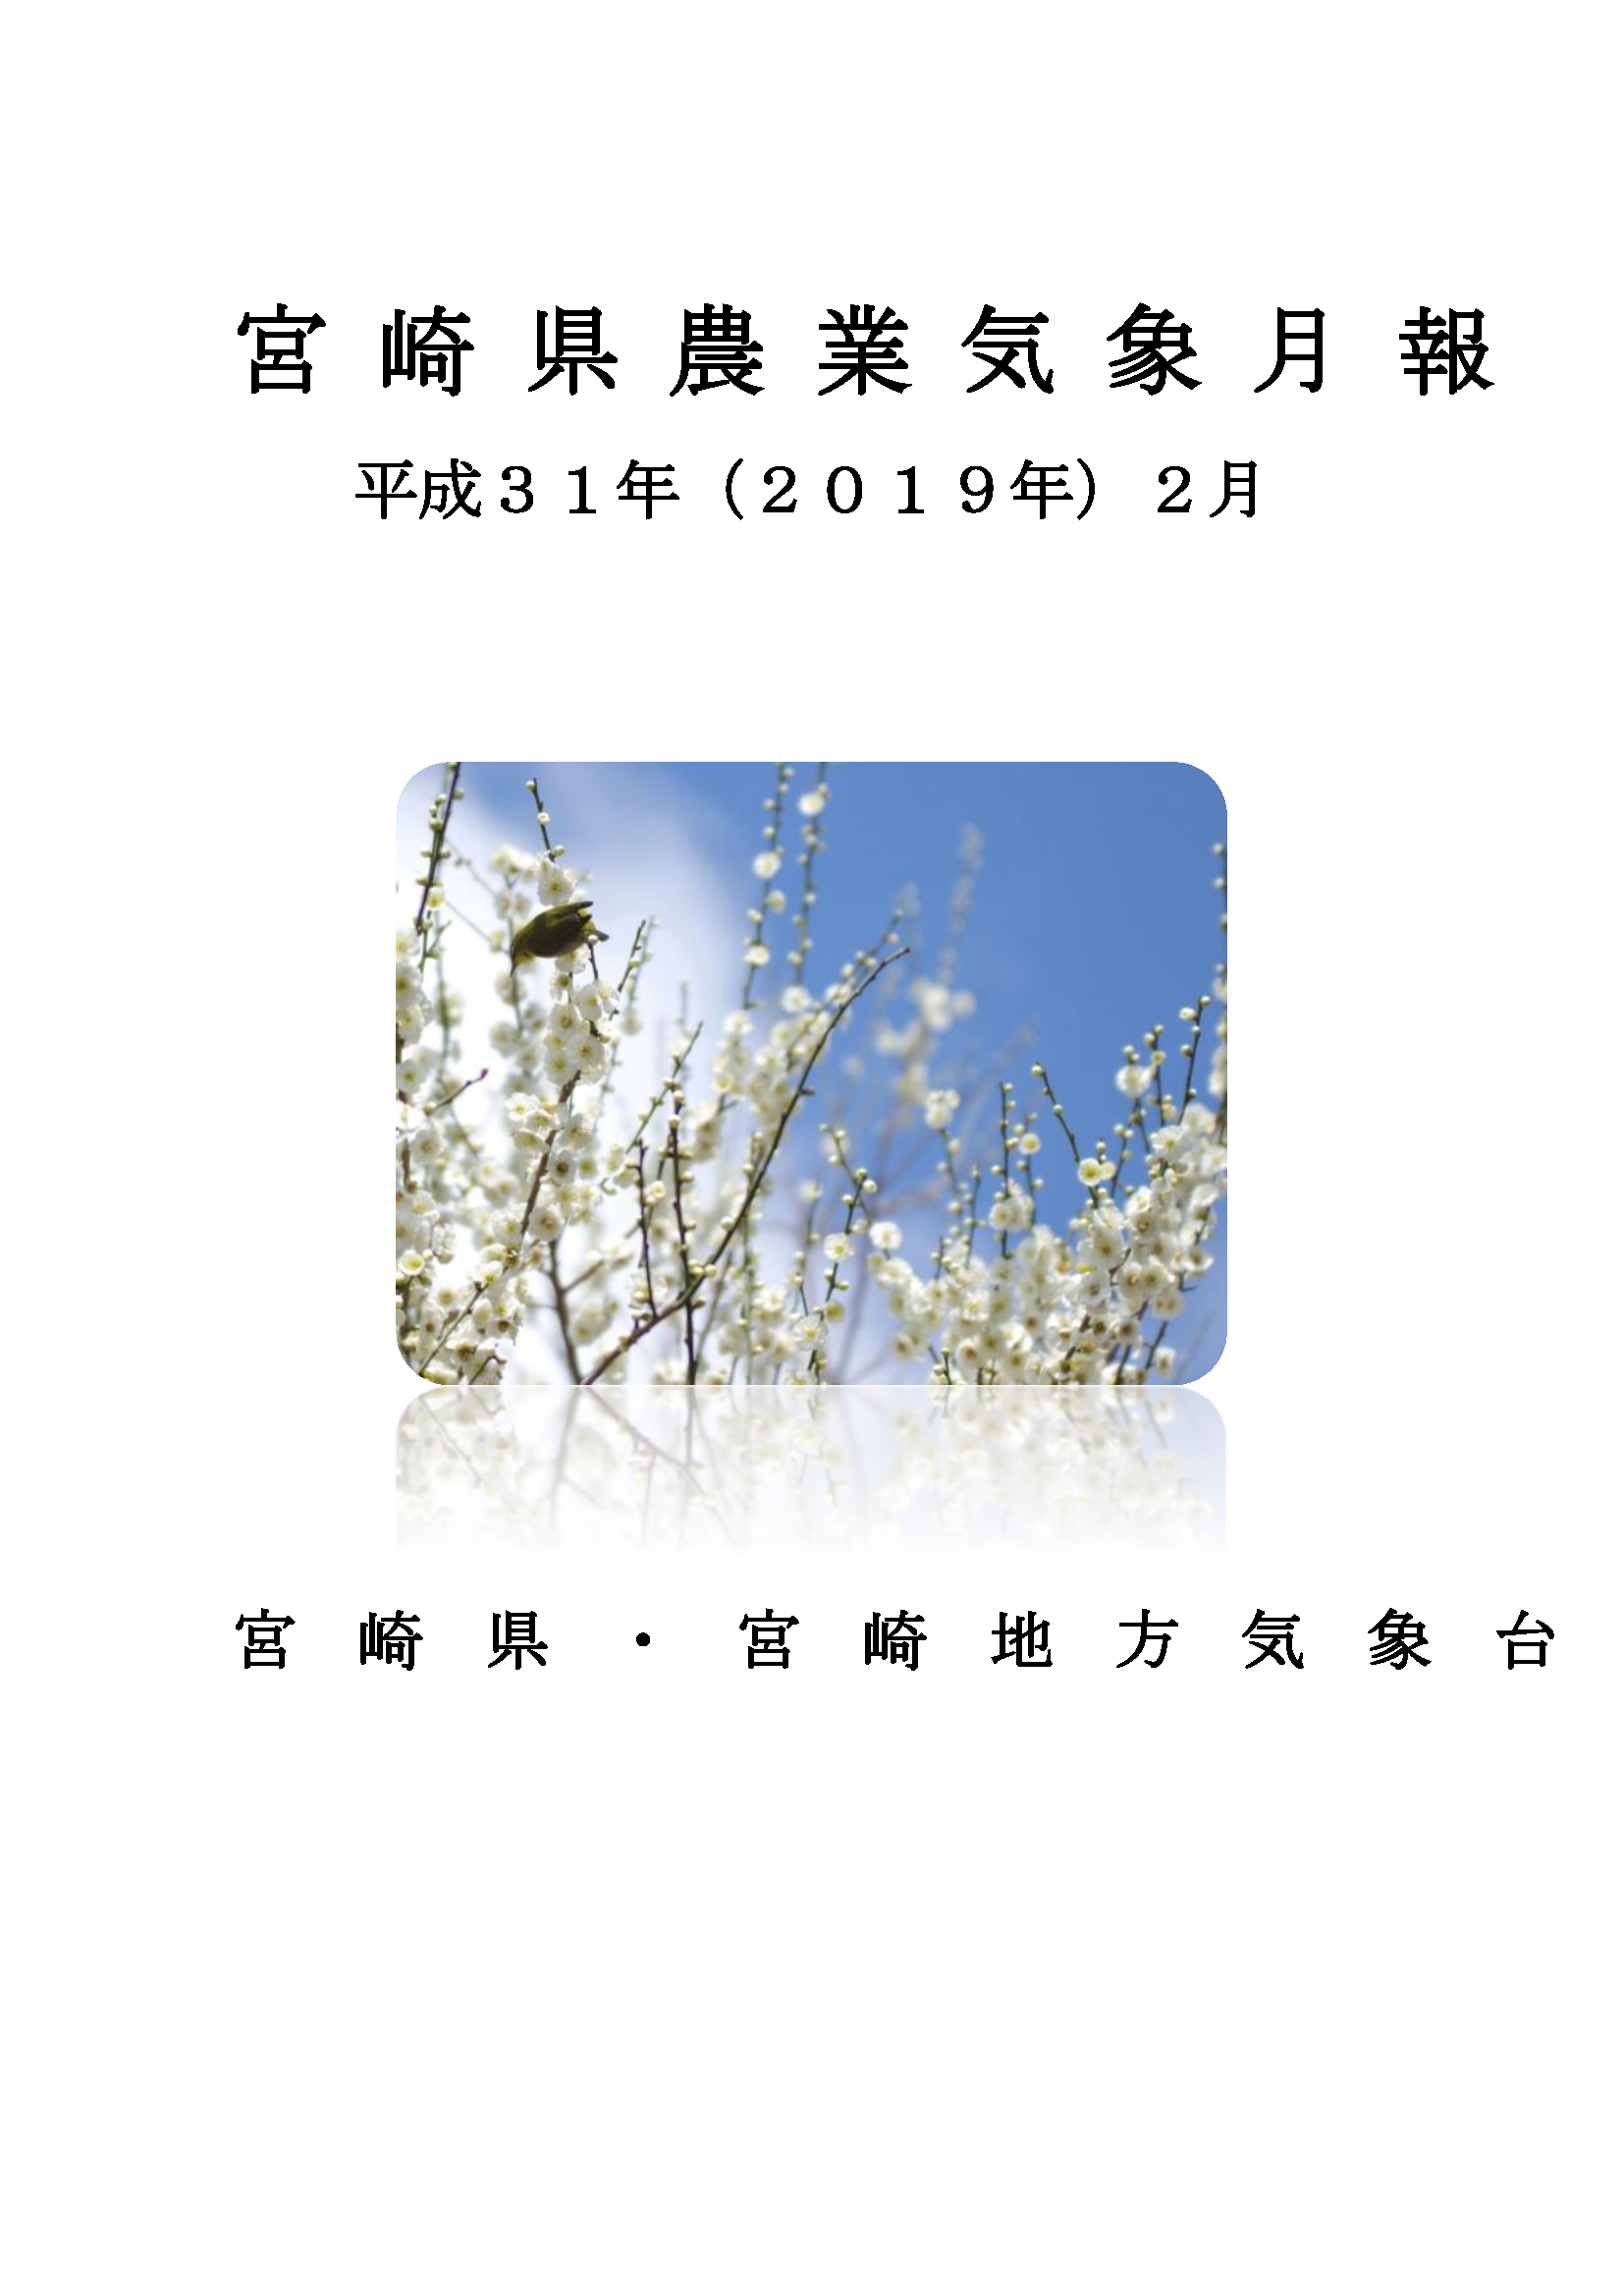 平成31年2月農業気象月報PDF